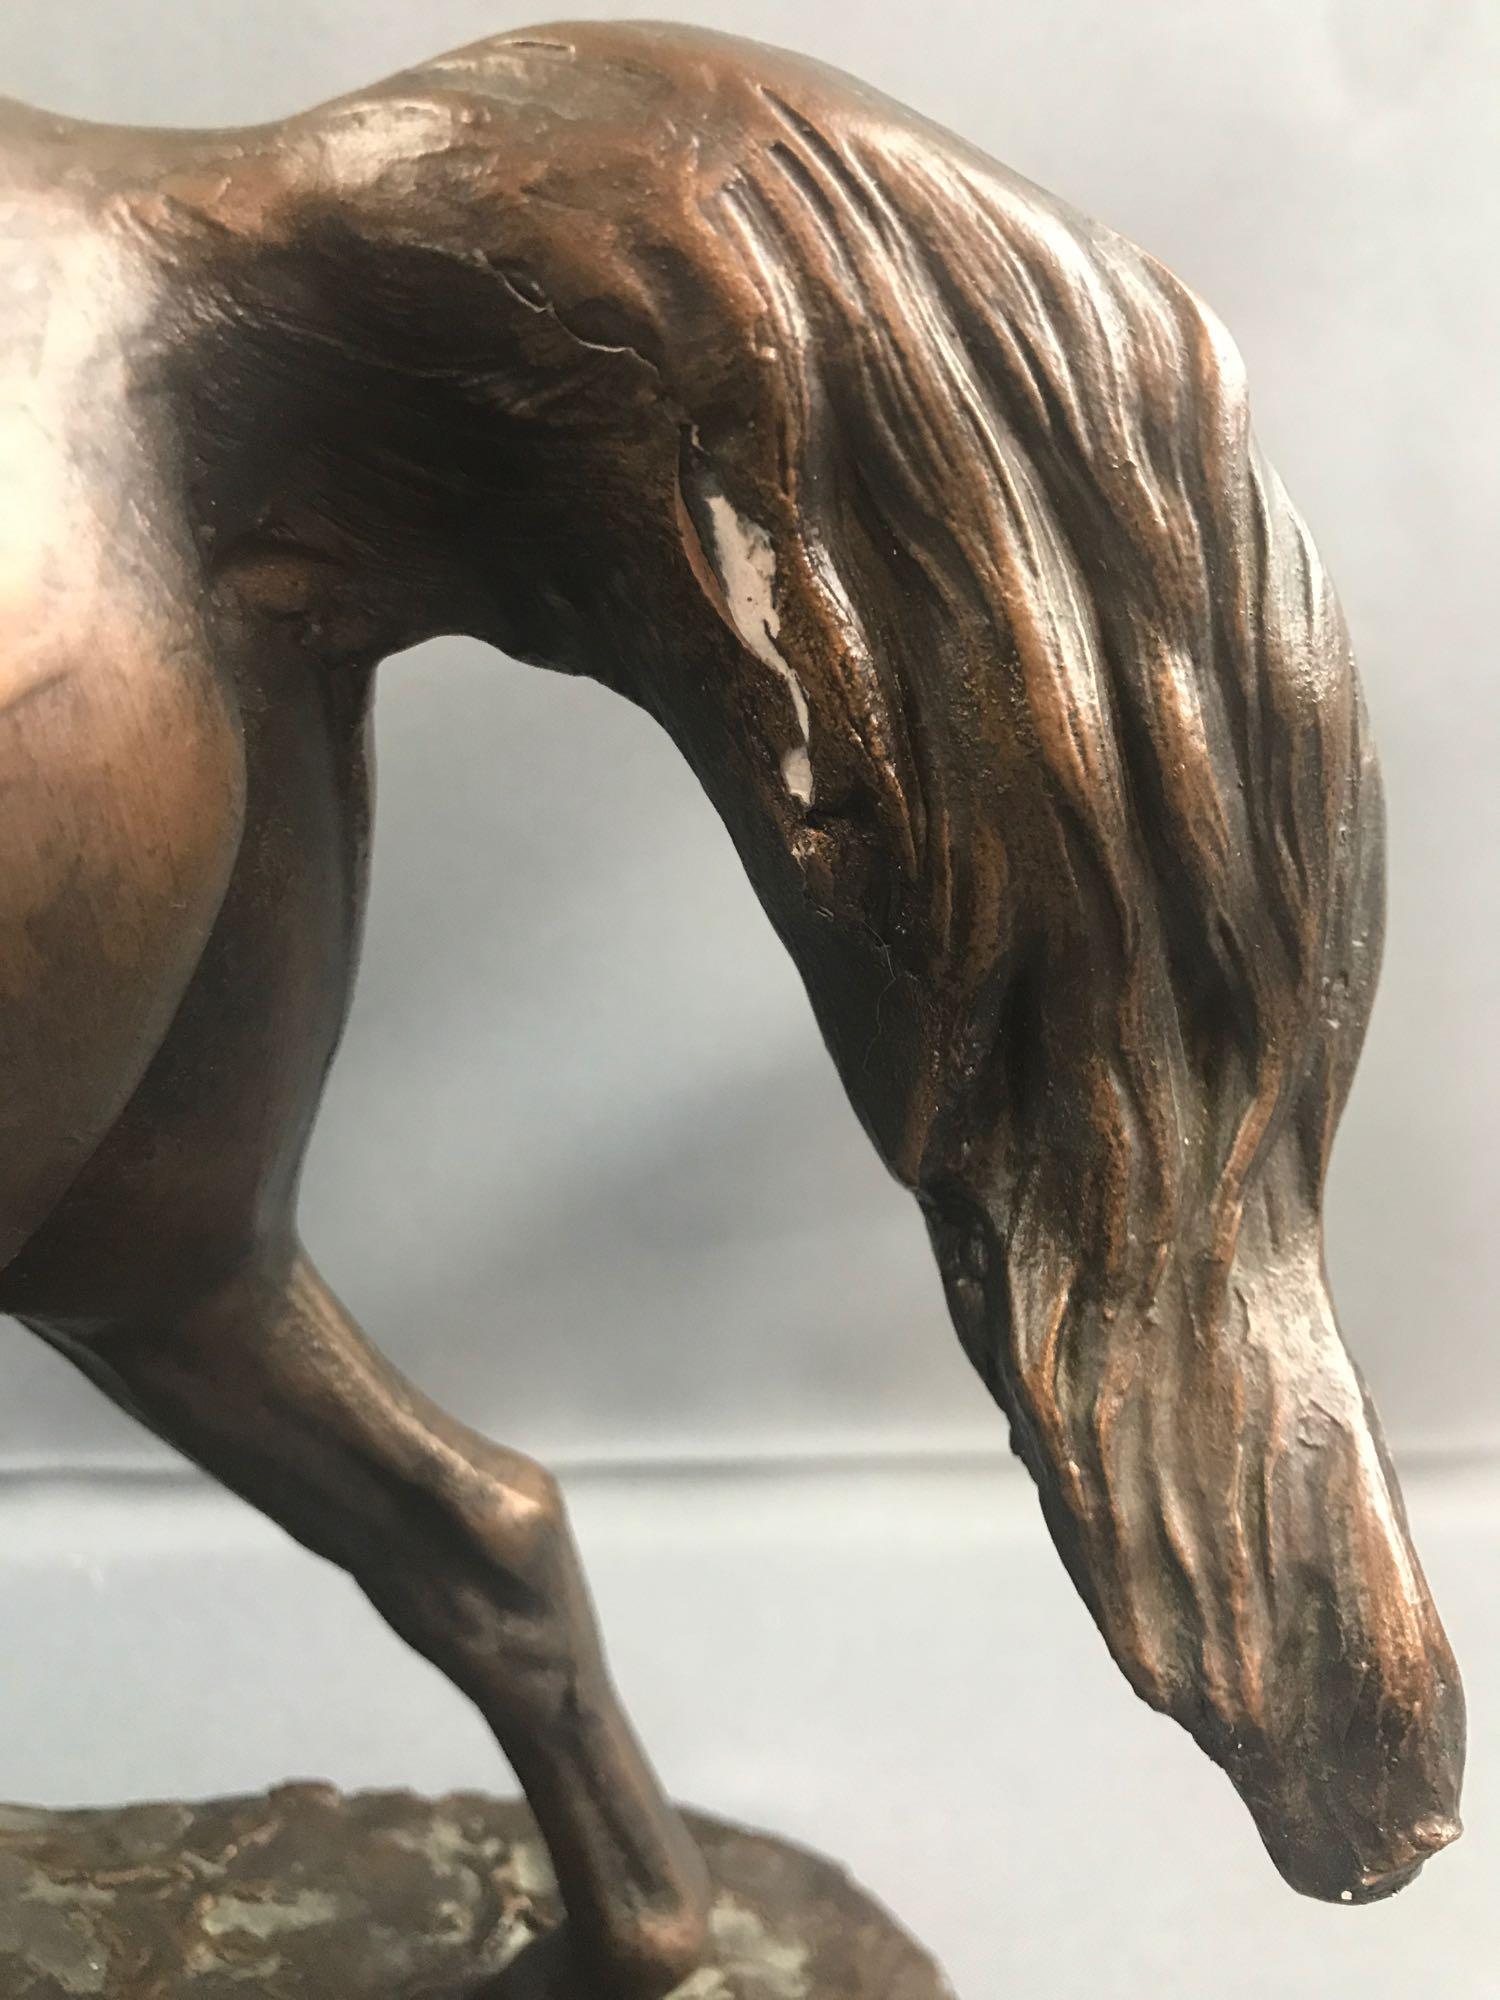 Vintage Austin Prod. inc 1975 horse sculpture